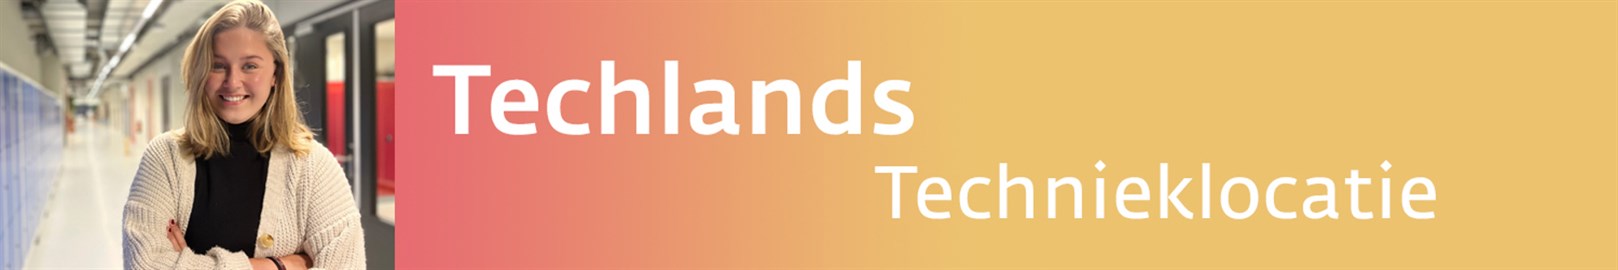 Banner Techlands Technieklocatie Def